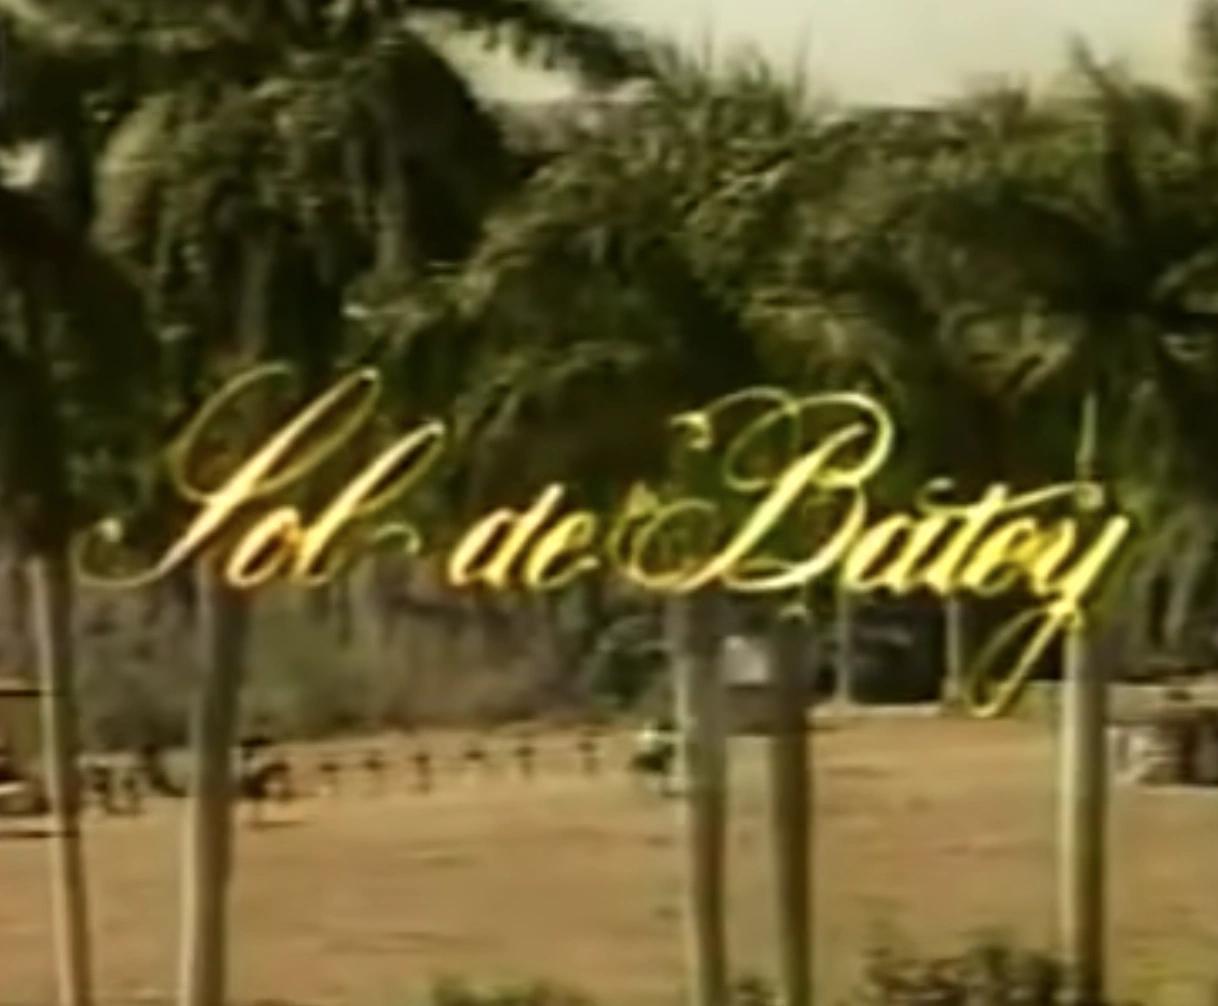 Sol de Batey (TV Series)